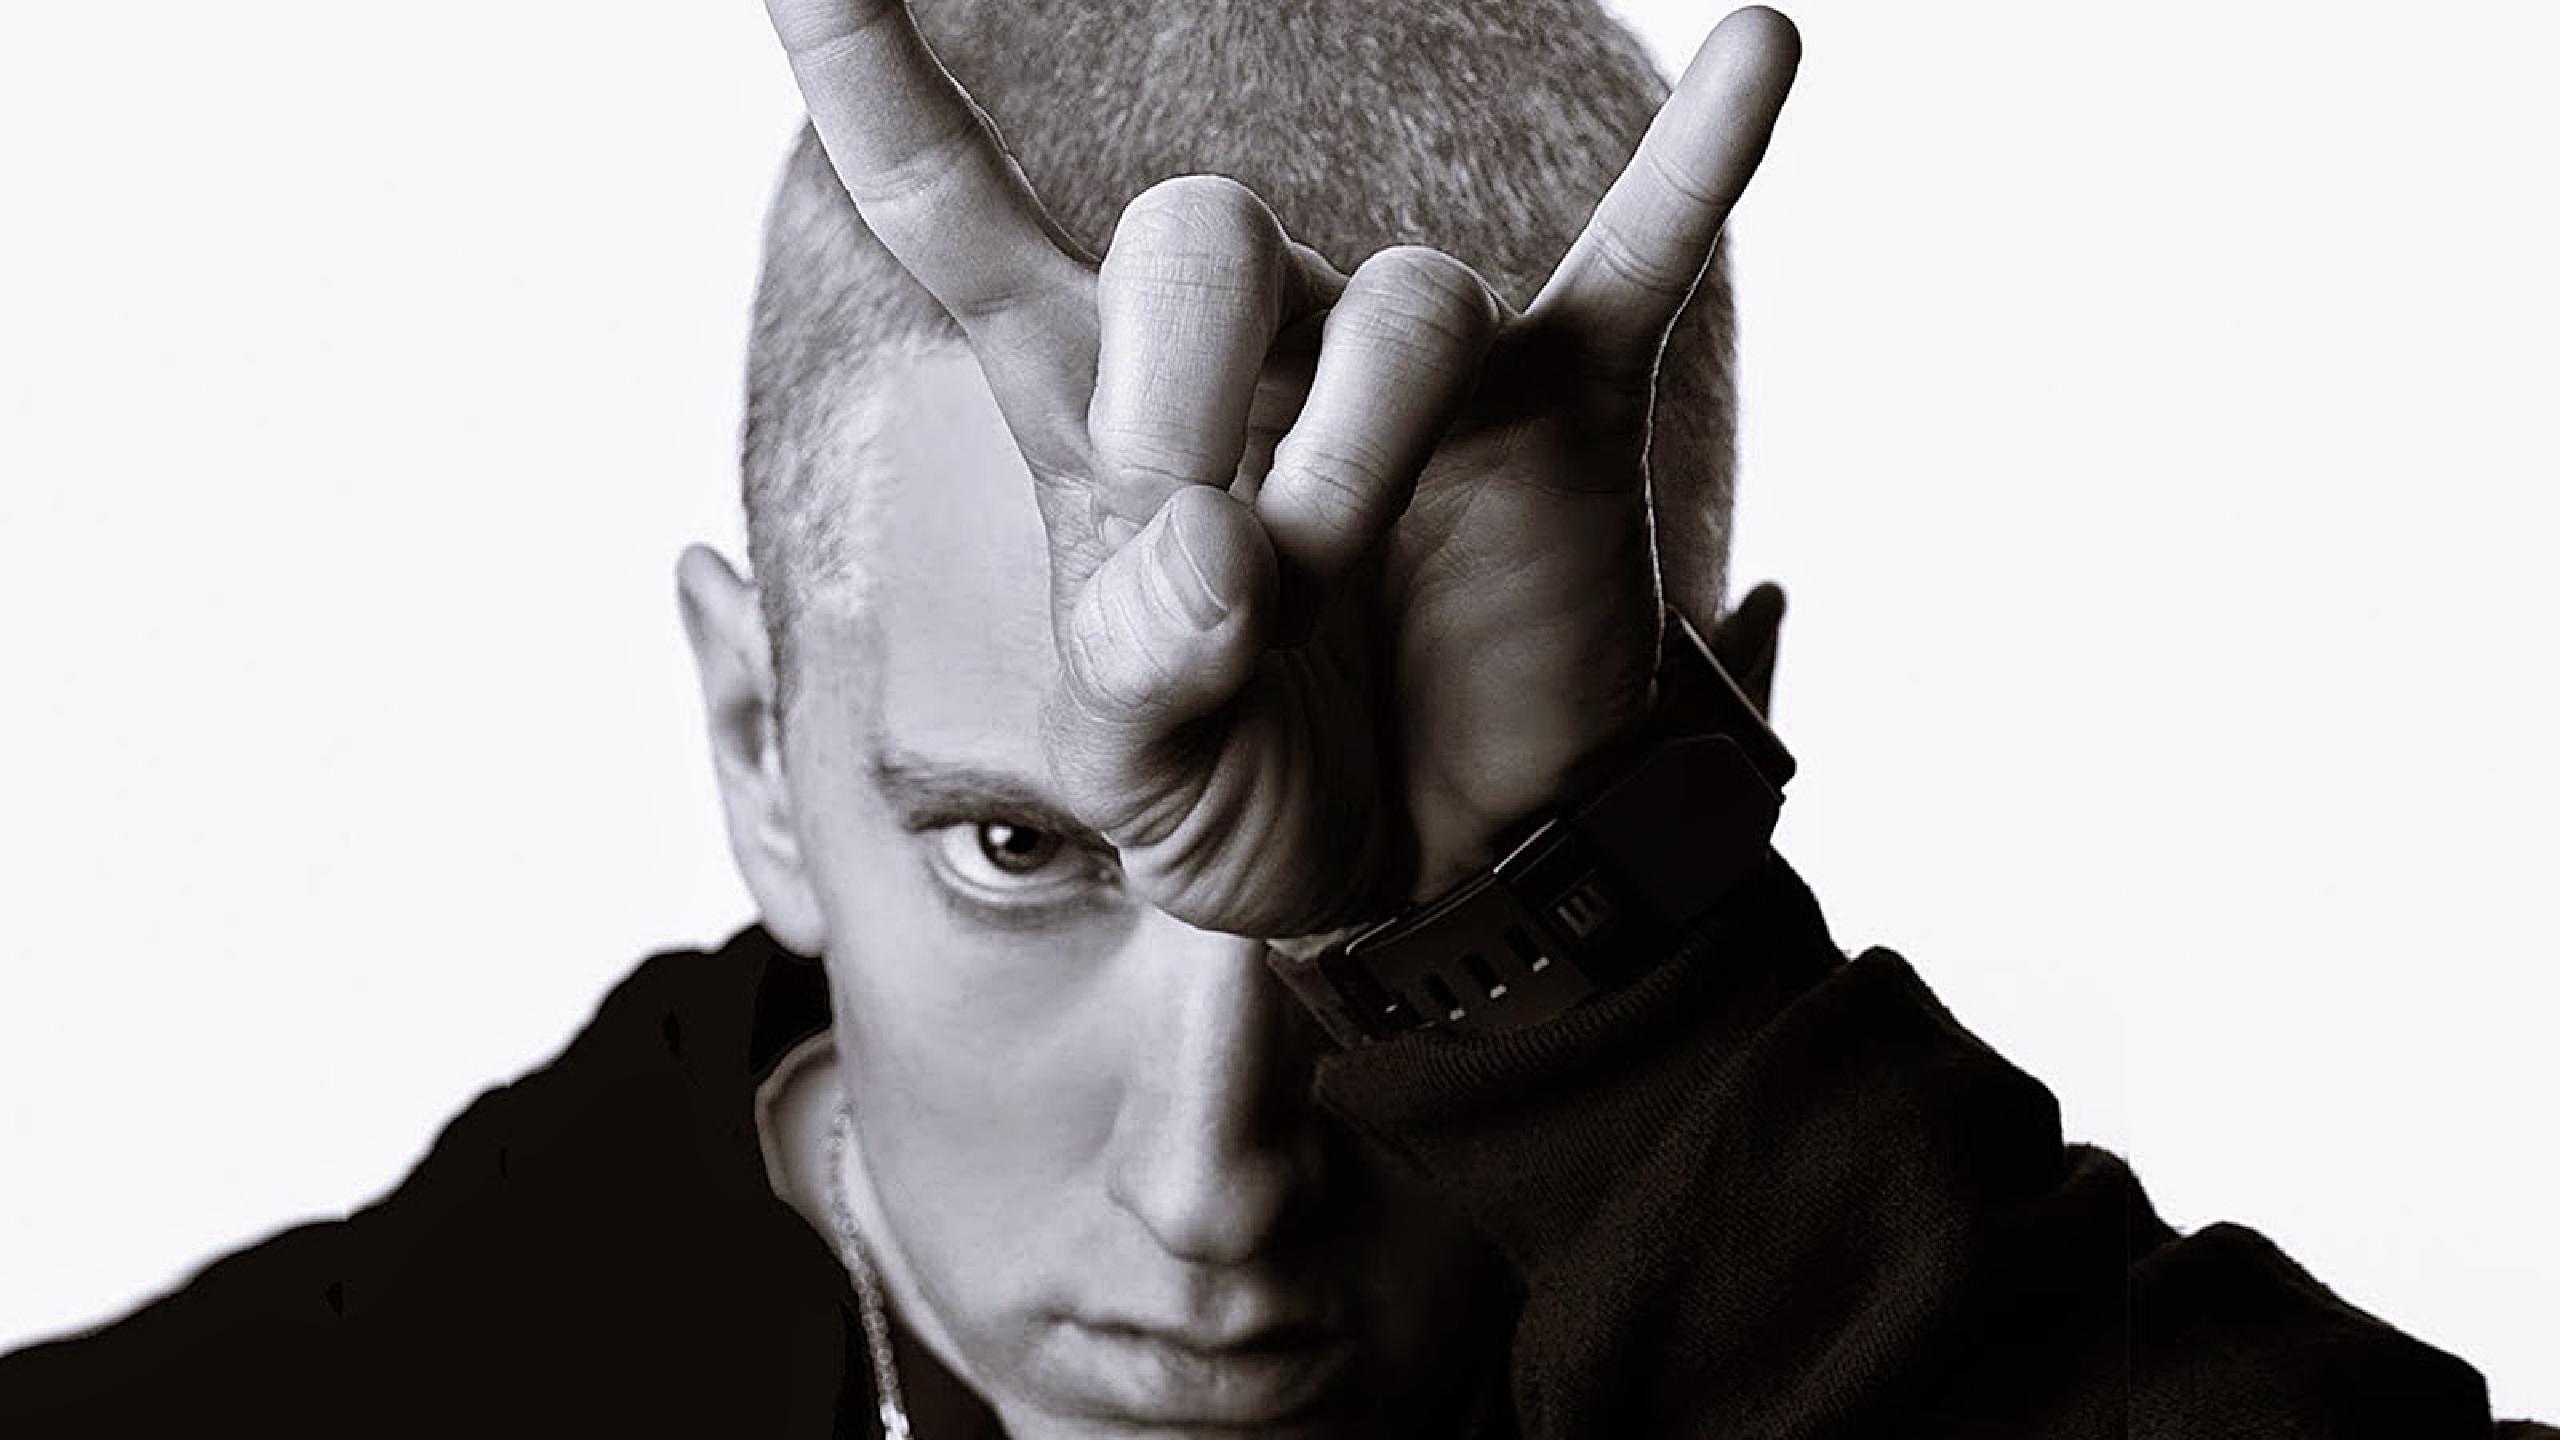 El partido conservador de Nueva Zelanda tendrá que pagarle 415000$ a Eminem. cusica plus.